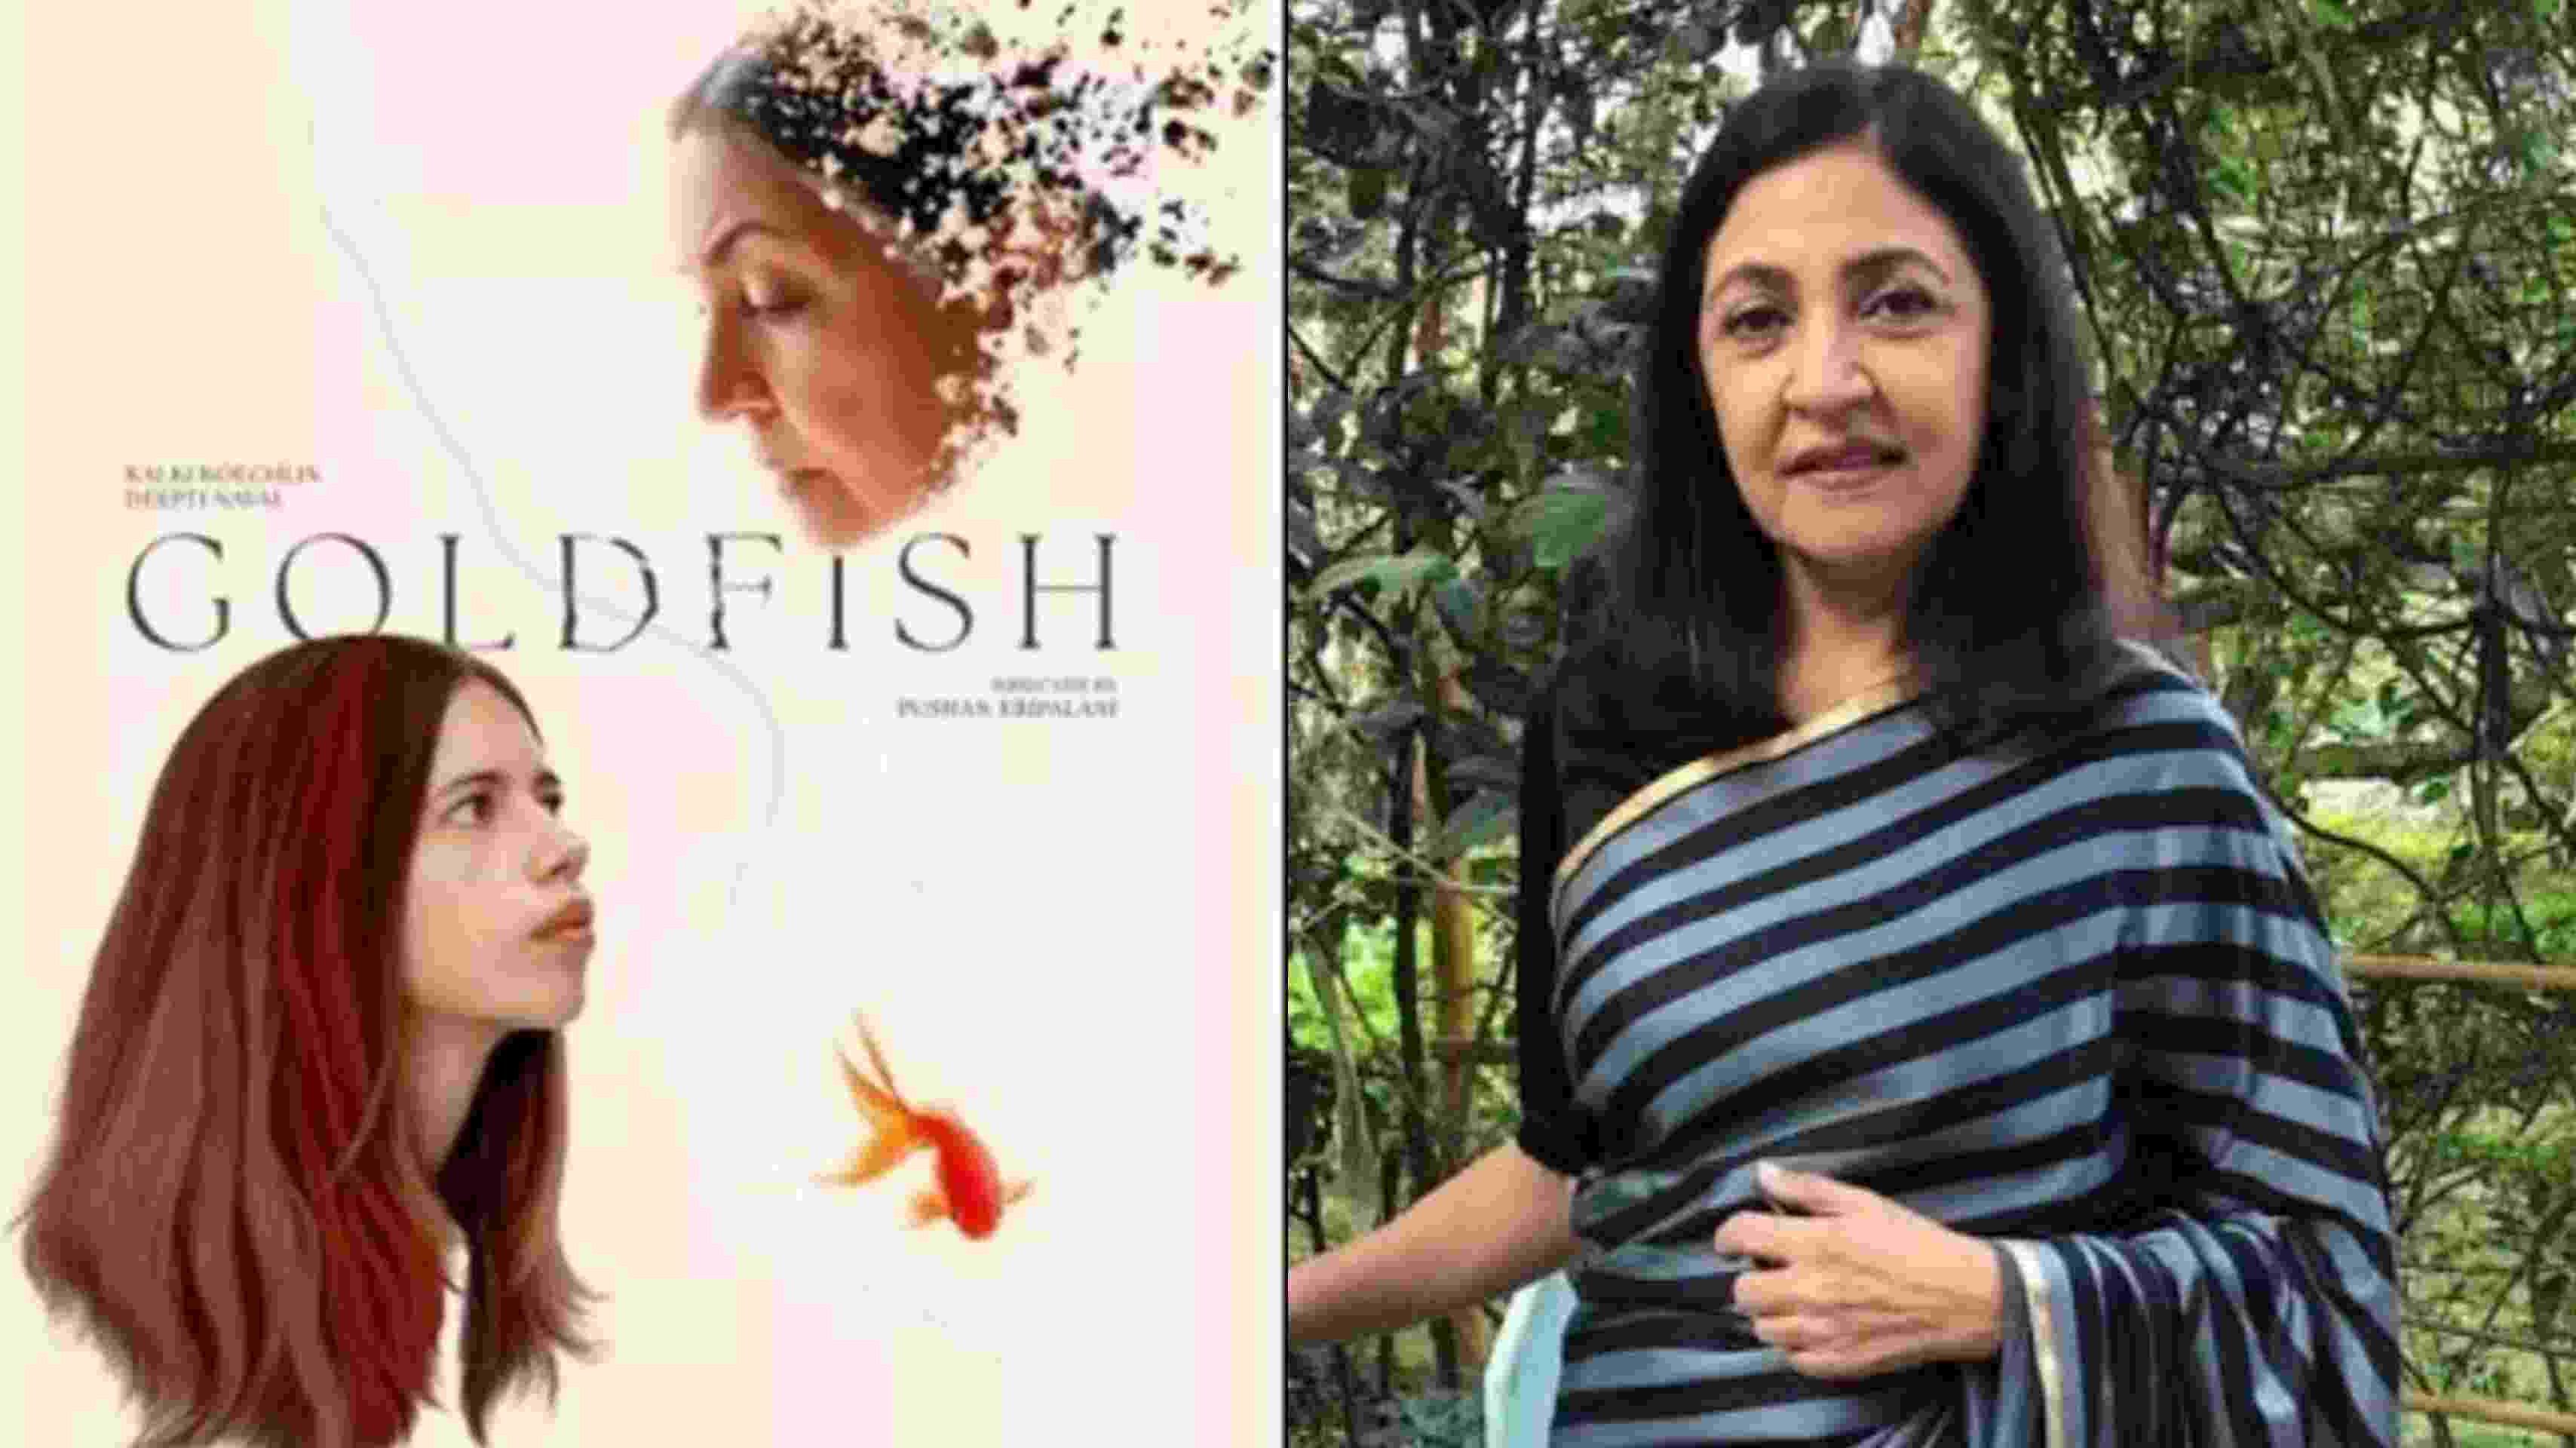 दीप्ति नवल की फिल्म 'गोल्डफिश' होगी बुसान इंटरनेशनल फिल्म फेस्टिवल 2022 में प्रदर्शित